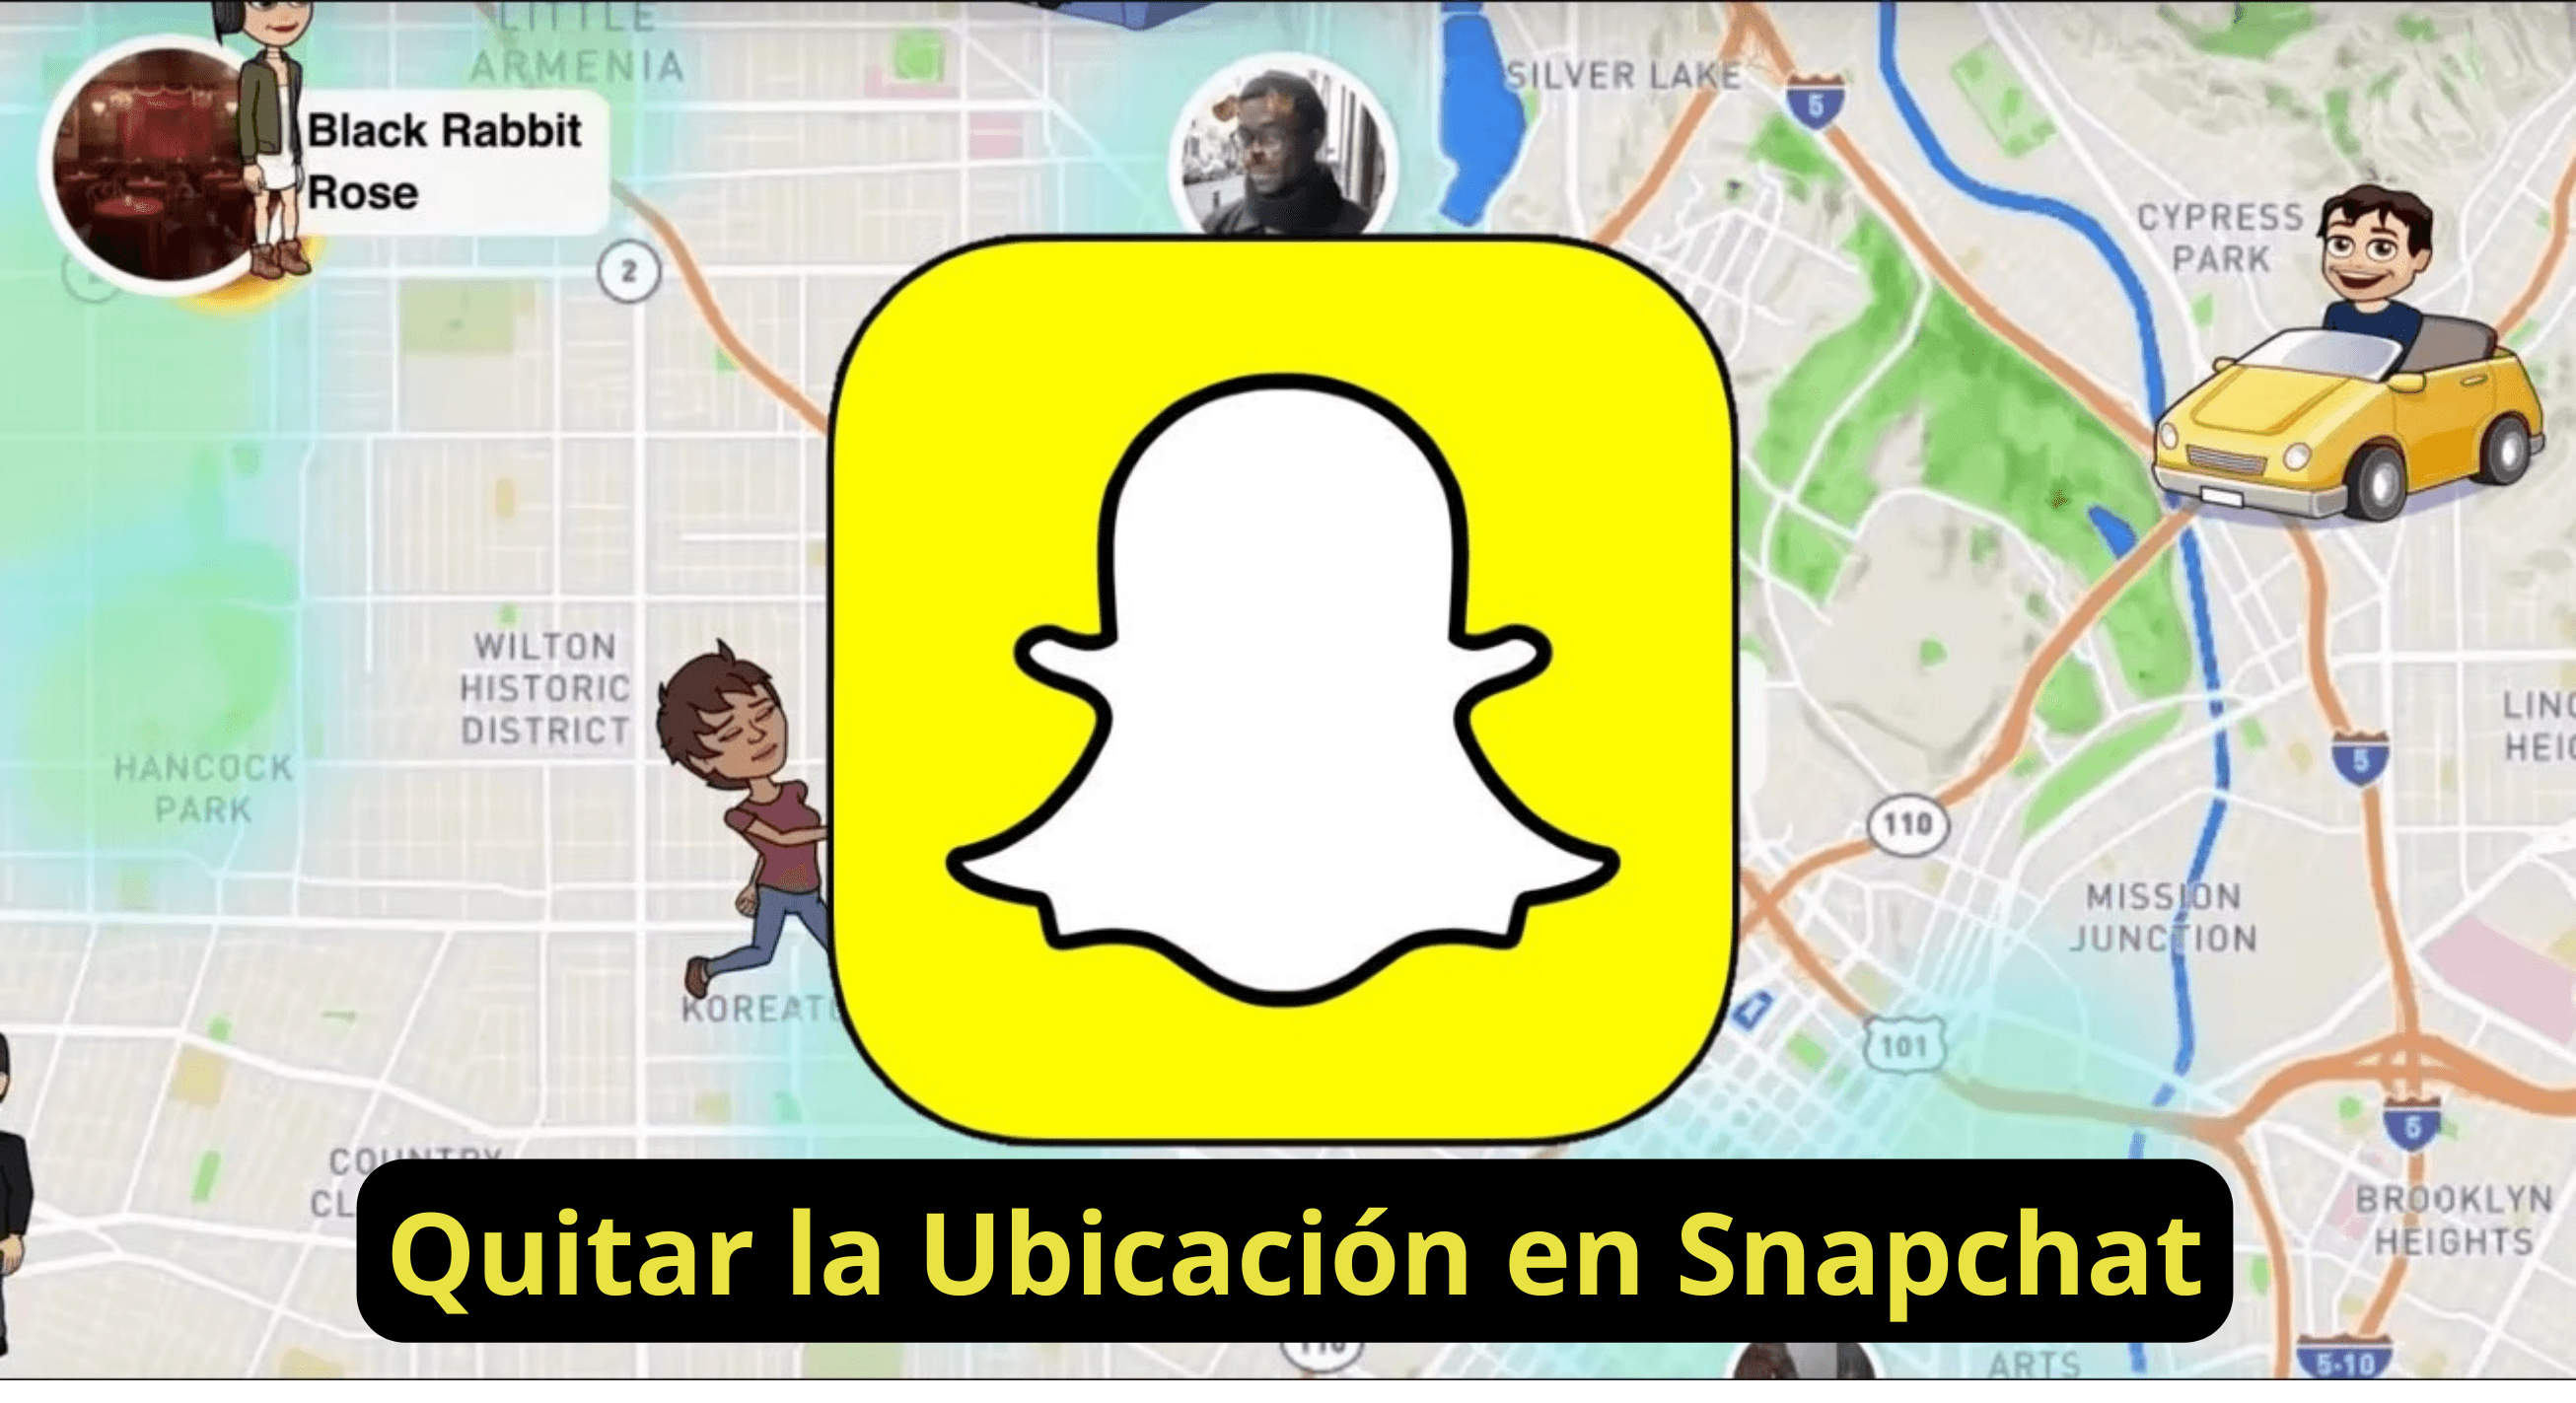 Quitar tu Ubicación en Snapchat